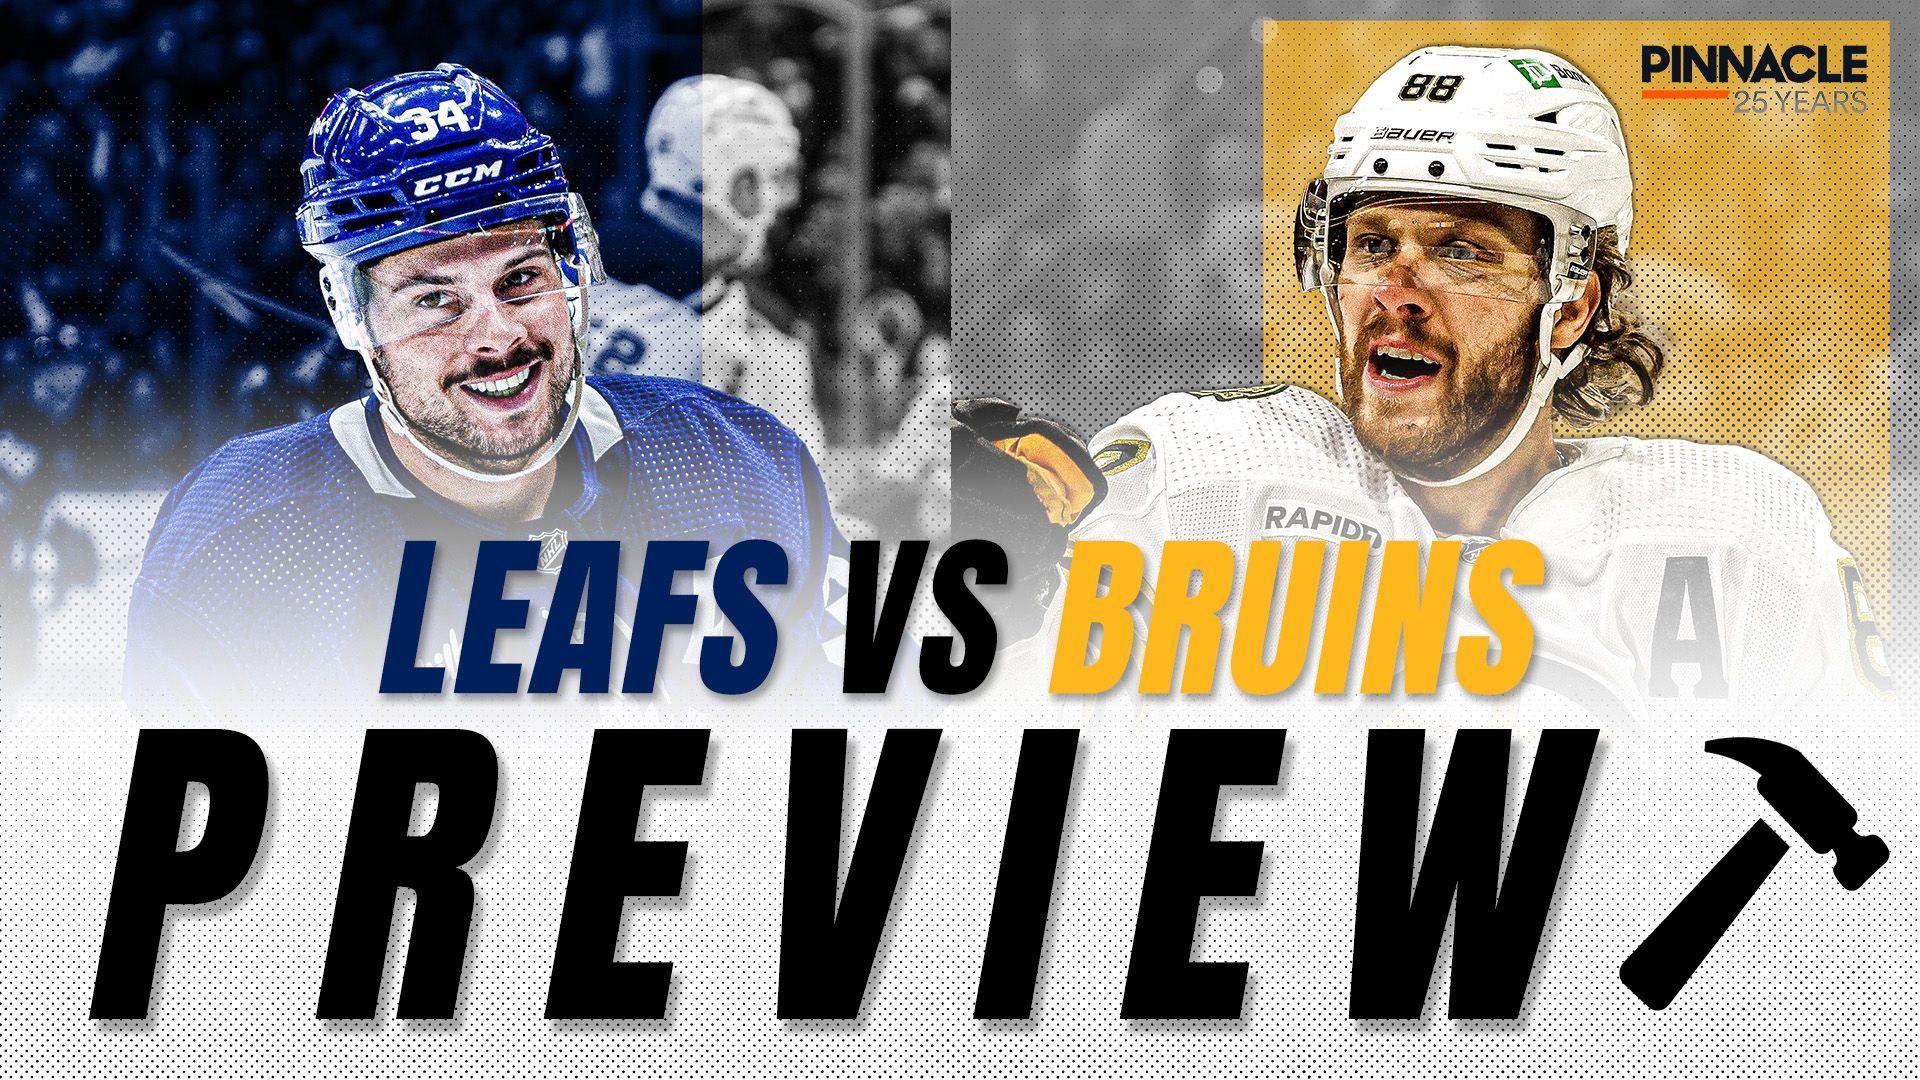 Leafs_Bruins Preview Thumbnail.jpg